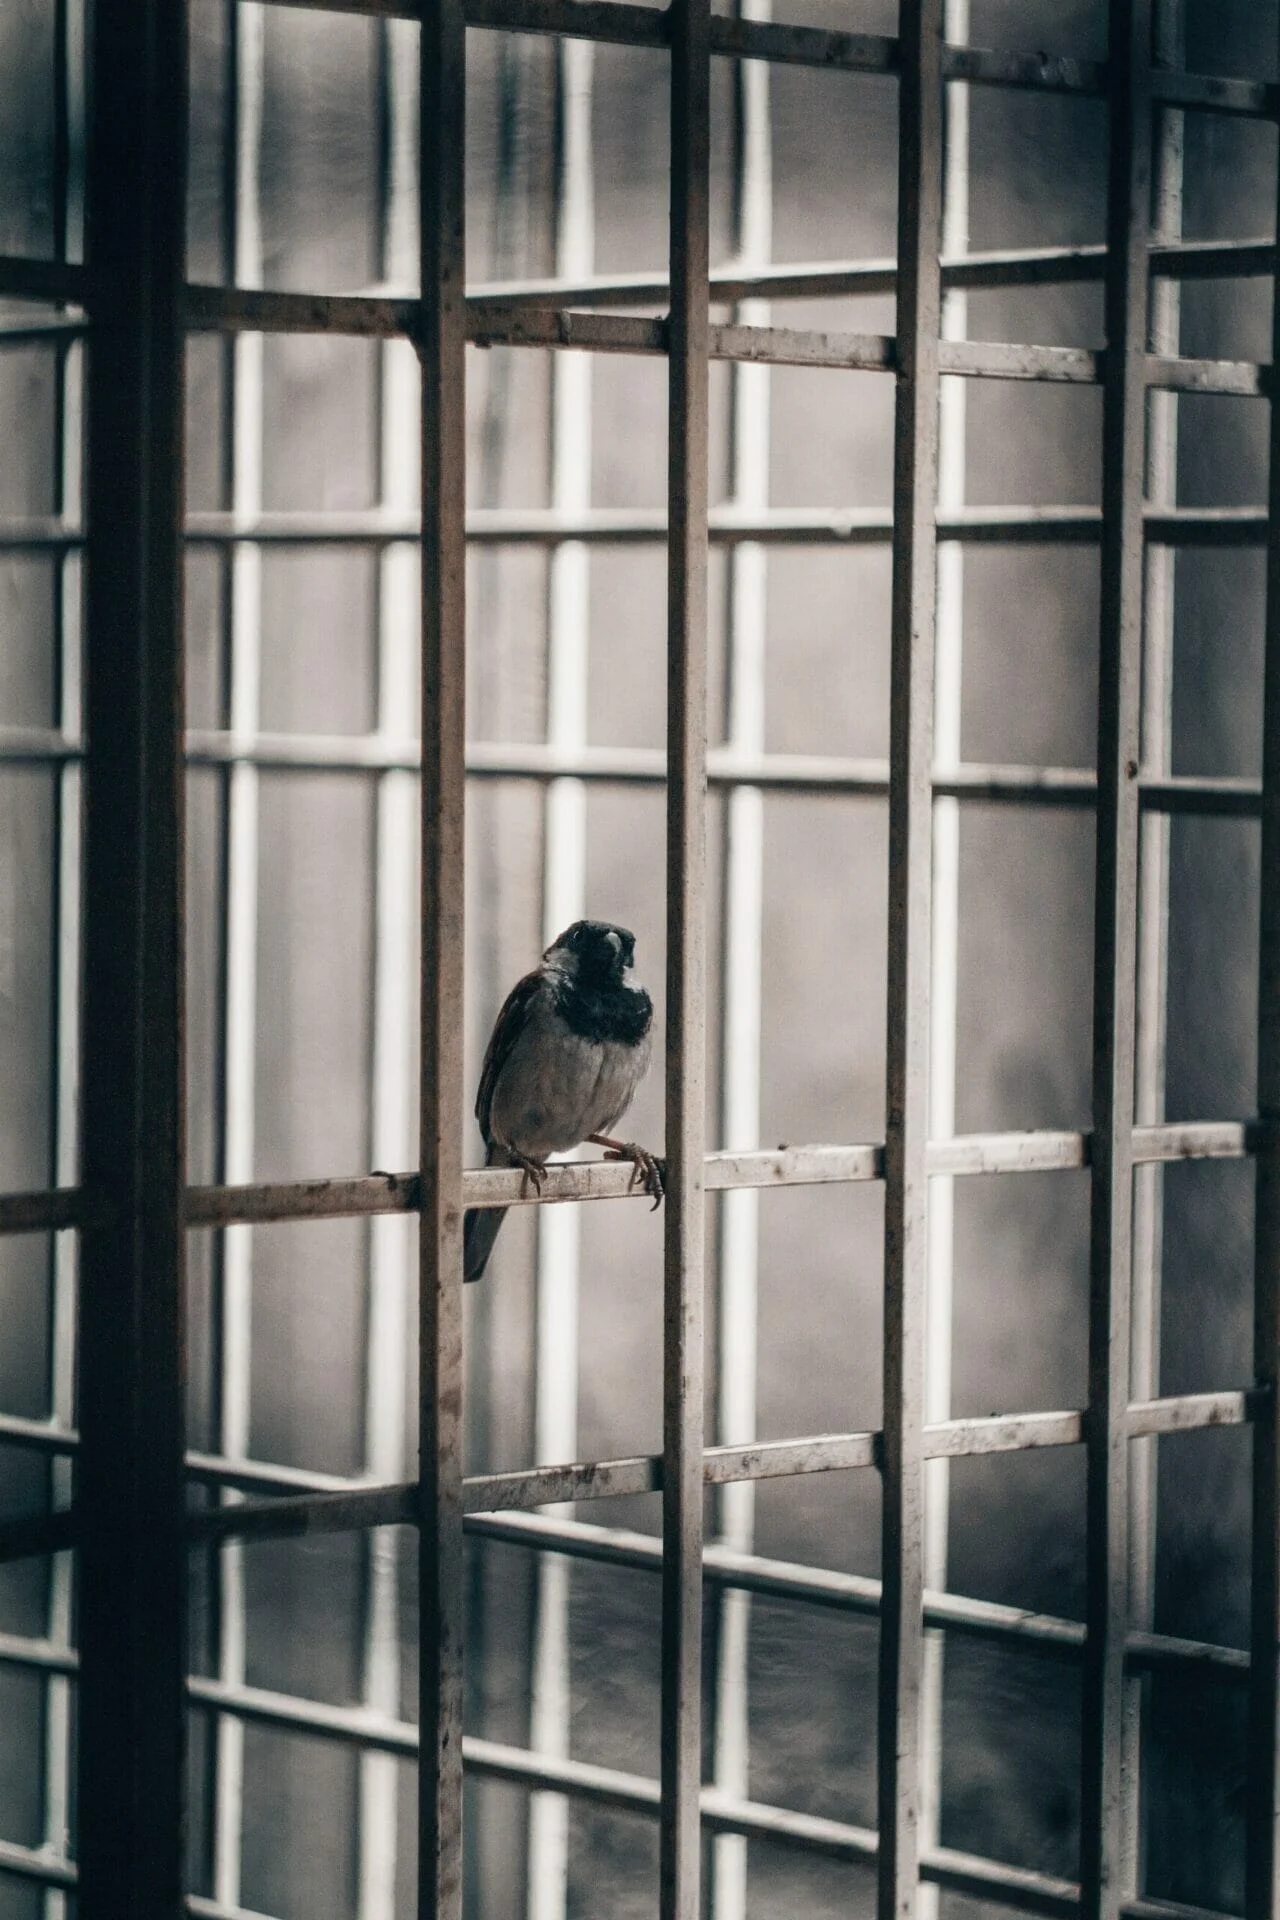 L'università di Rebibbia | Learning about life in prison